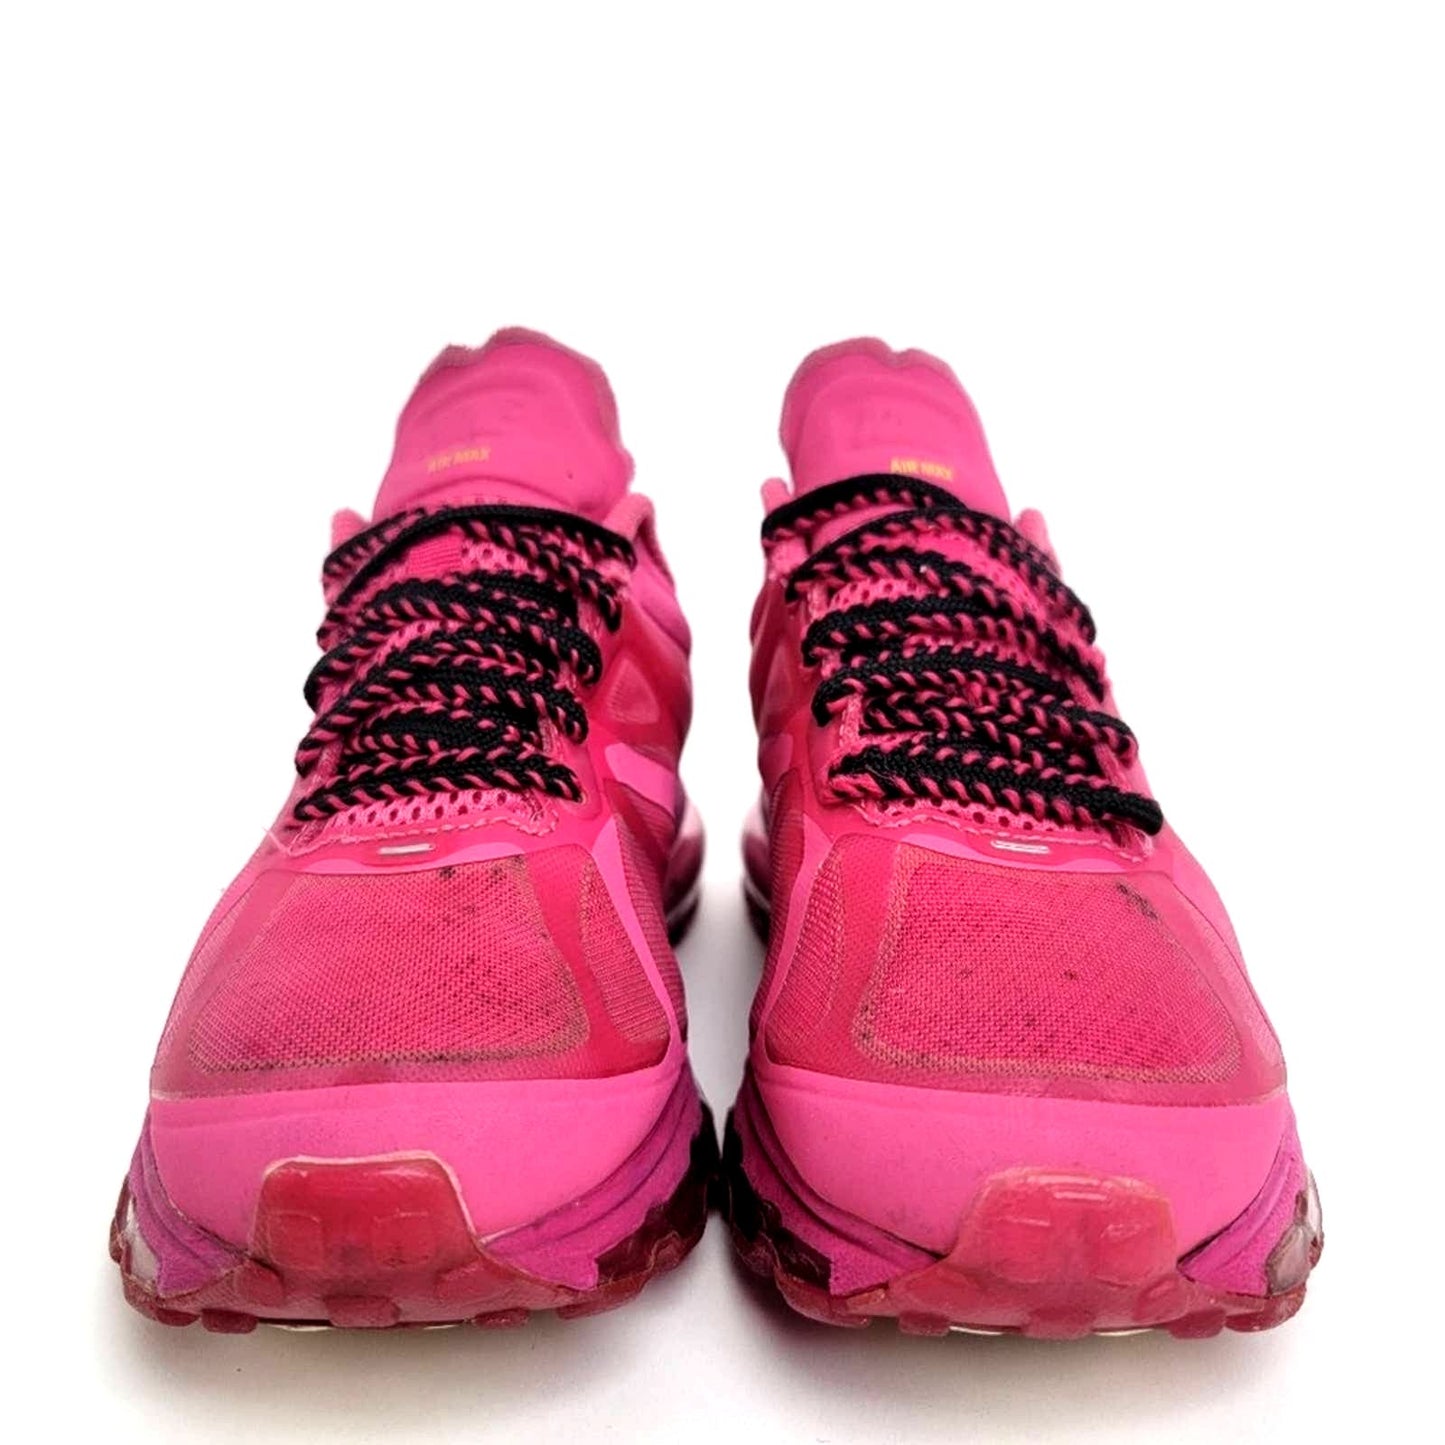 Nike Air Max+ 2012 'Atomic Green-Rave Pink' - 7.5